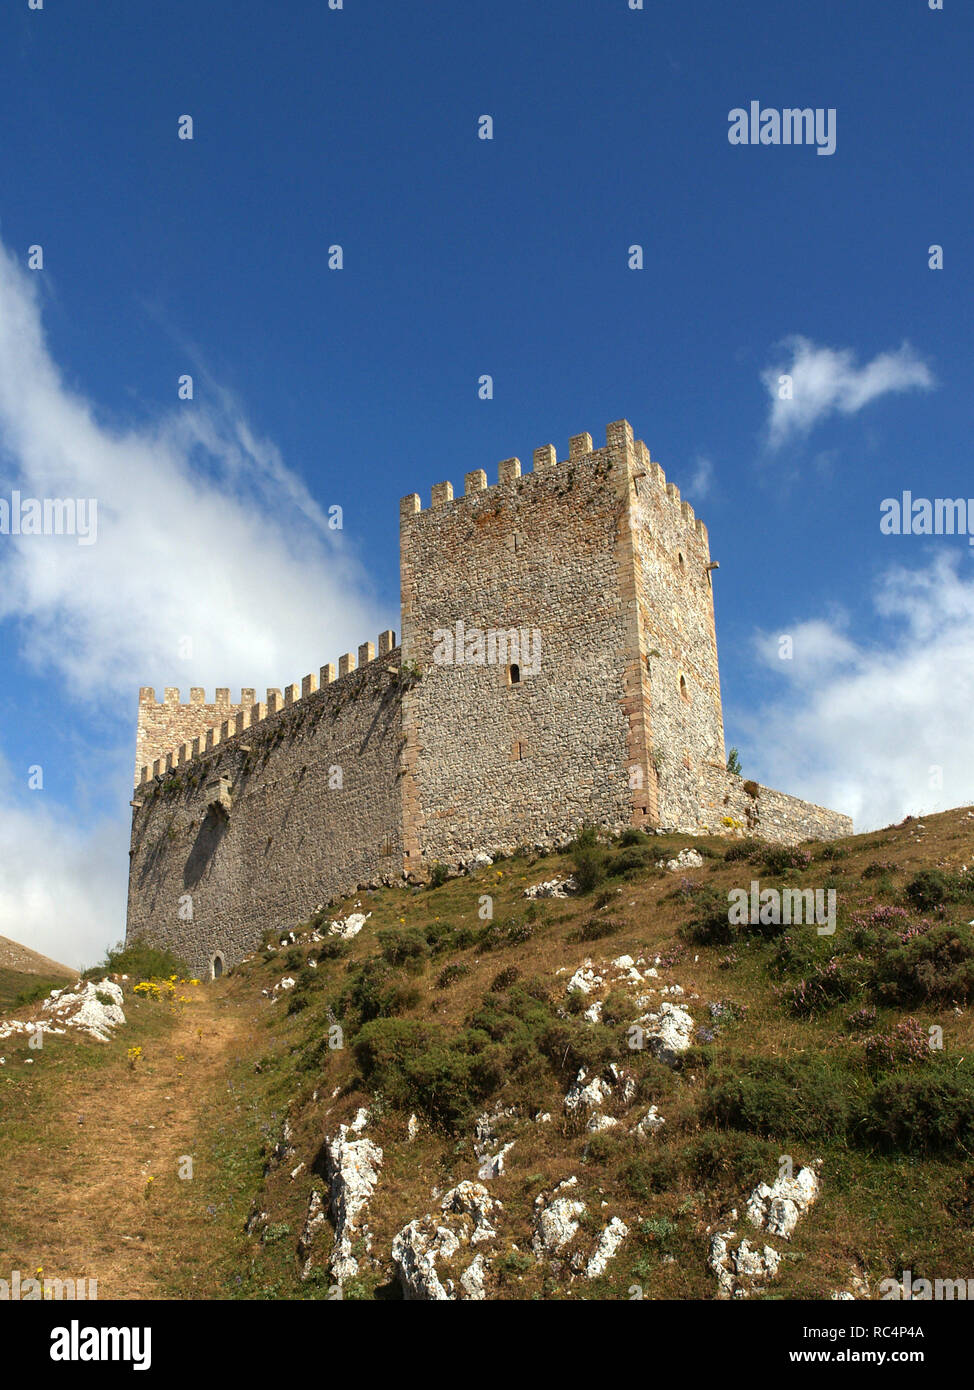 CANTABRIA. Vista del Castillo de Argüeso, situado cerca de la localidad homónima. Se construyó entre los siglos XII y XIV. España. Foto Stock